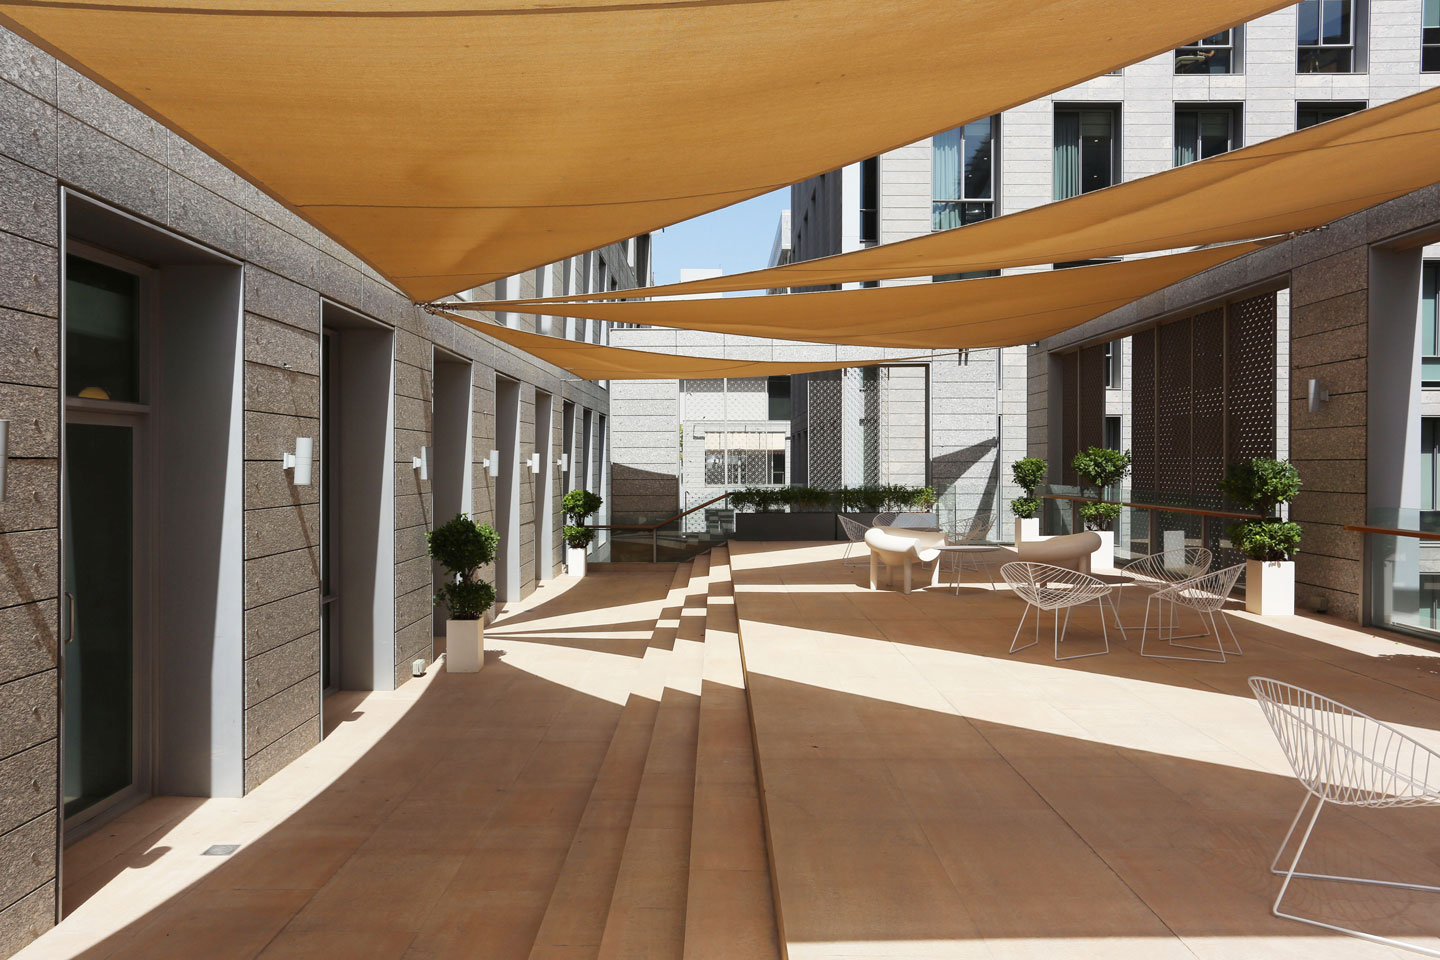 Istituto Marangoni Dubai's 249-square-metre terrace